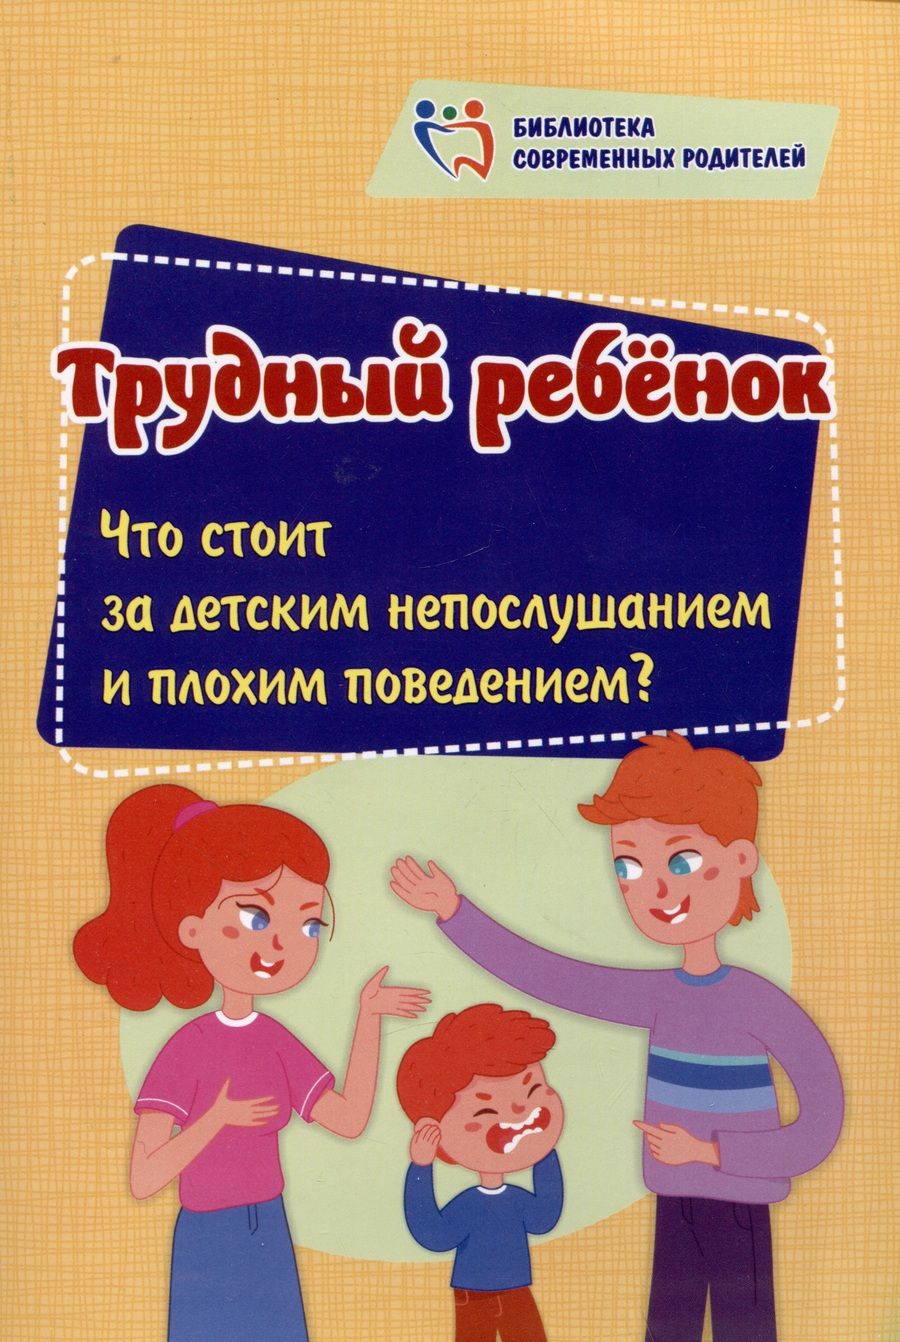 Обложка книги "Смирнова: Трудный ребенок. Что стоит за детским непослушанием и плохим поведением"